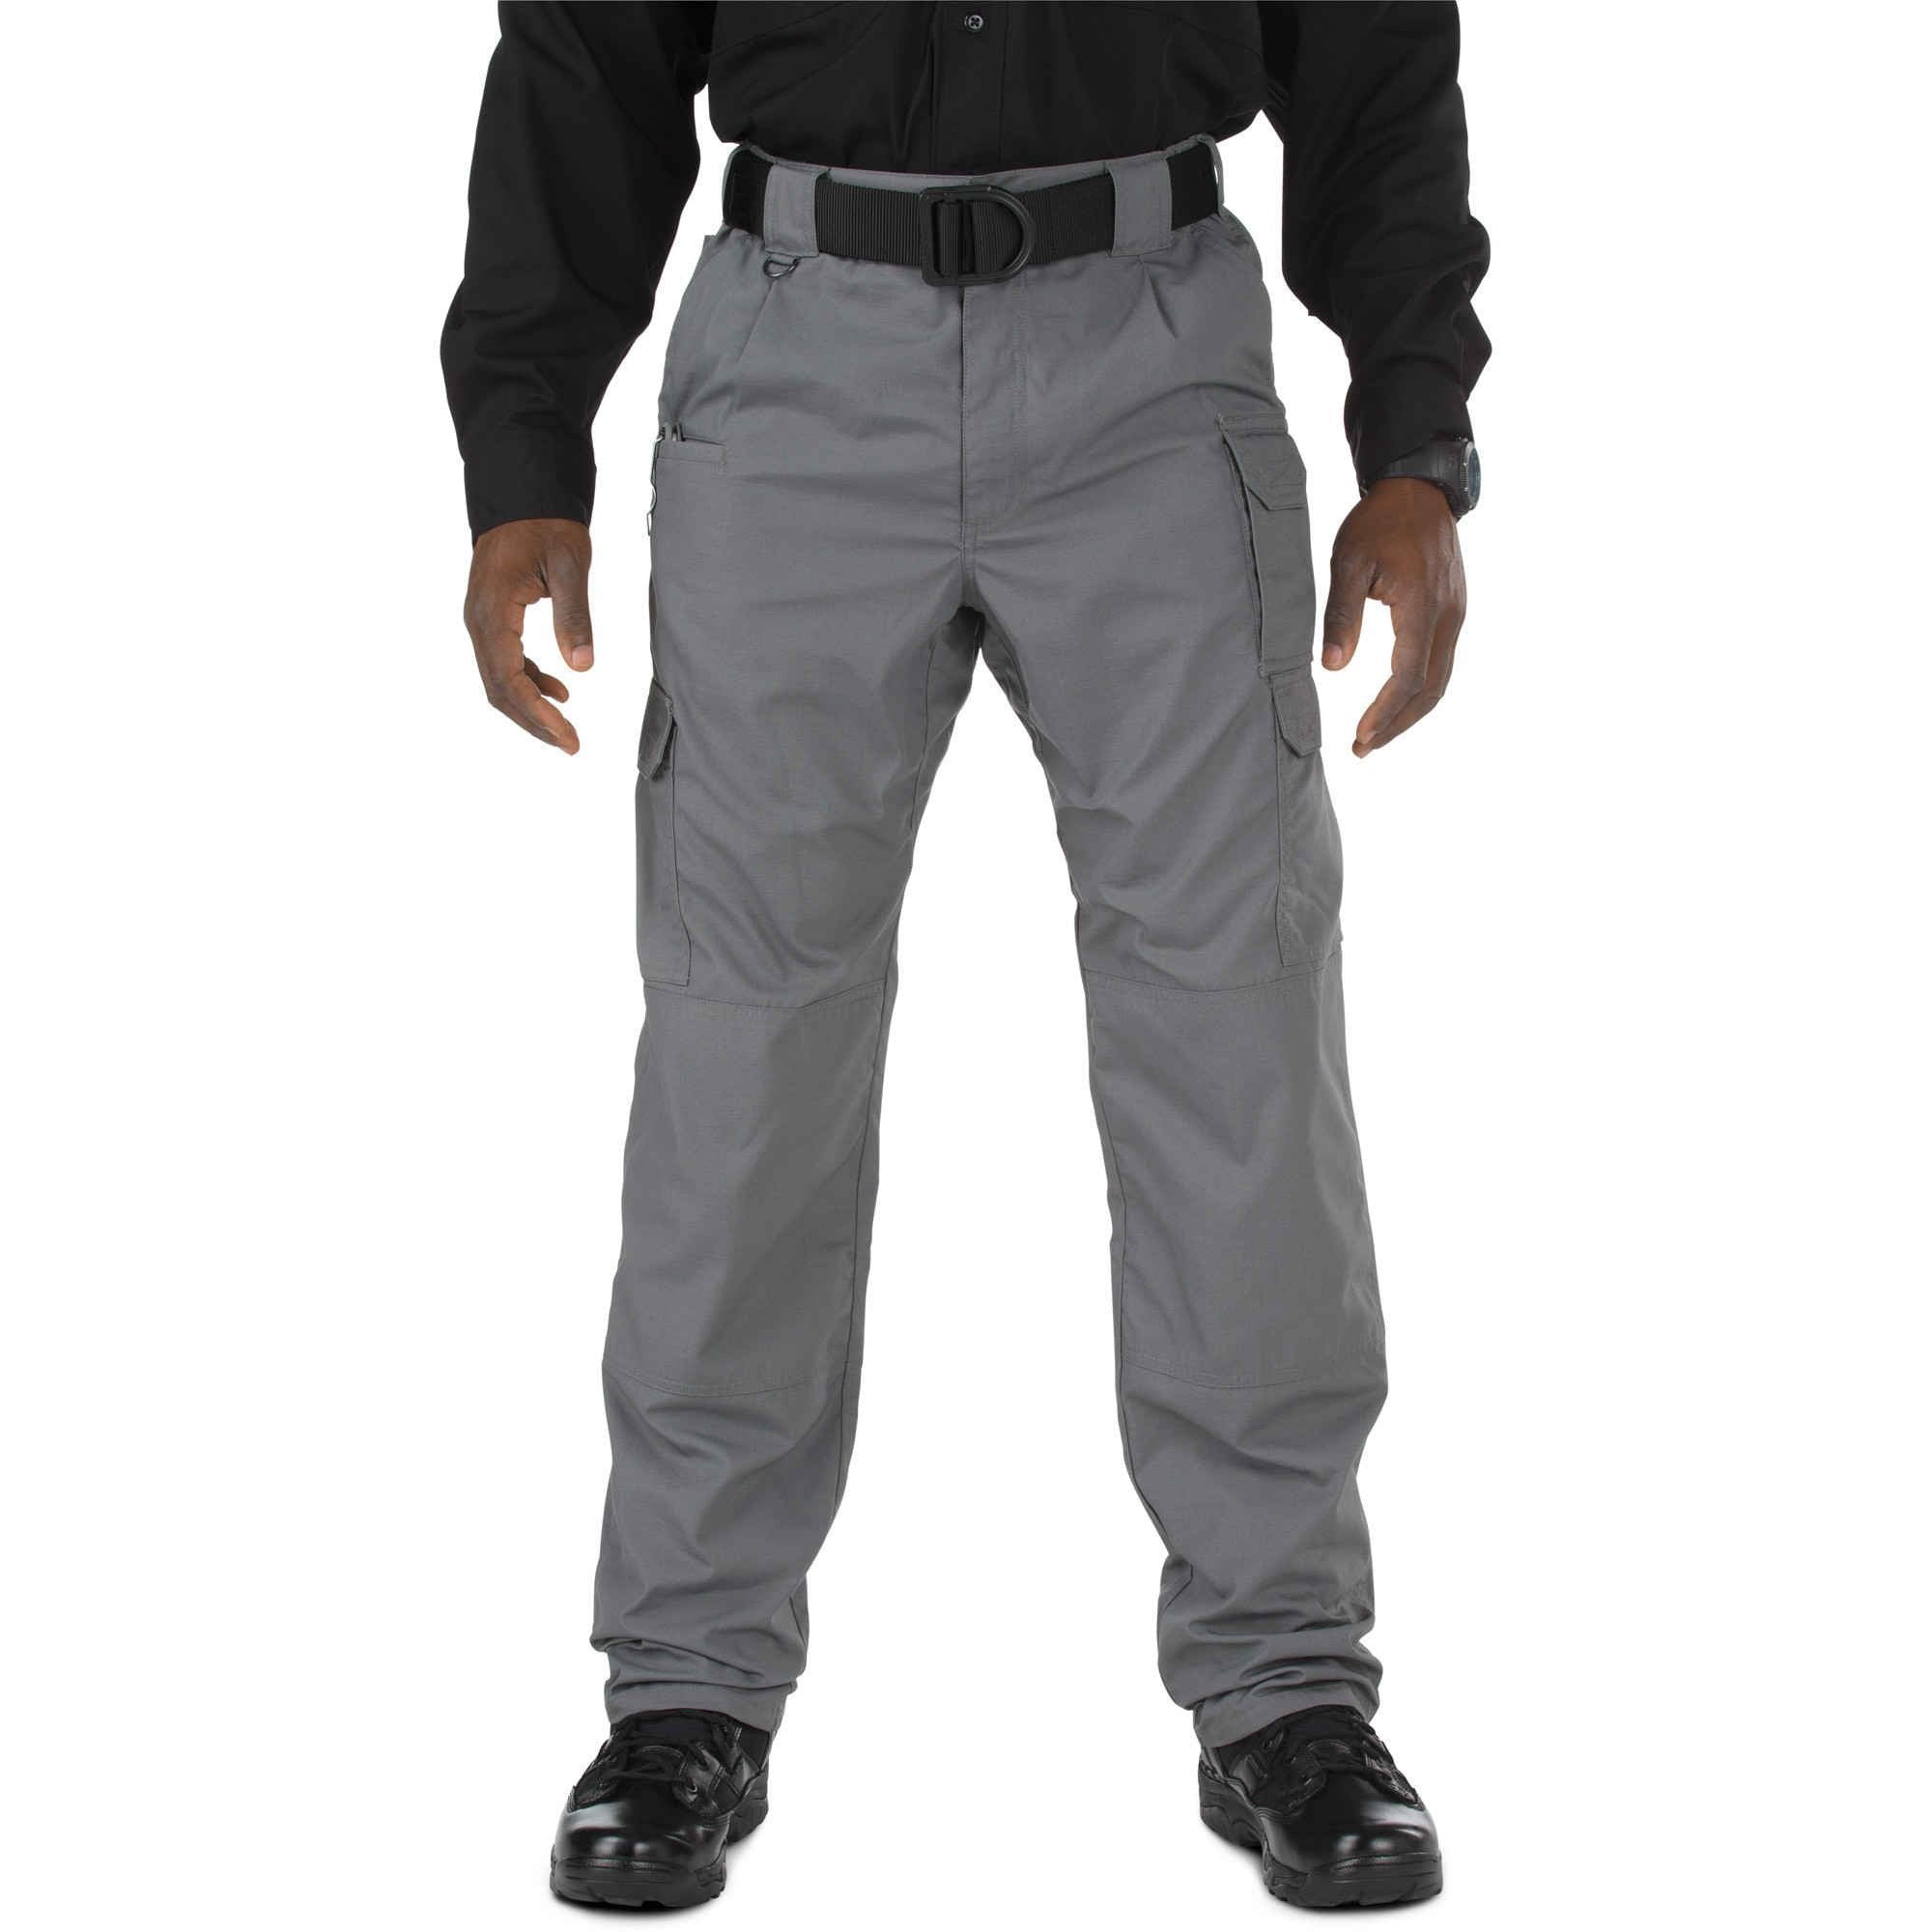 5.11 Tactical Taclite Pro Pants - Storm Pants 5.11 Tactical Tactical Gear Supplier Tactical Distributors Australia